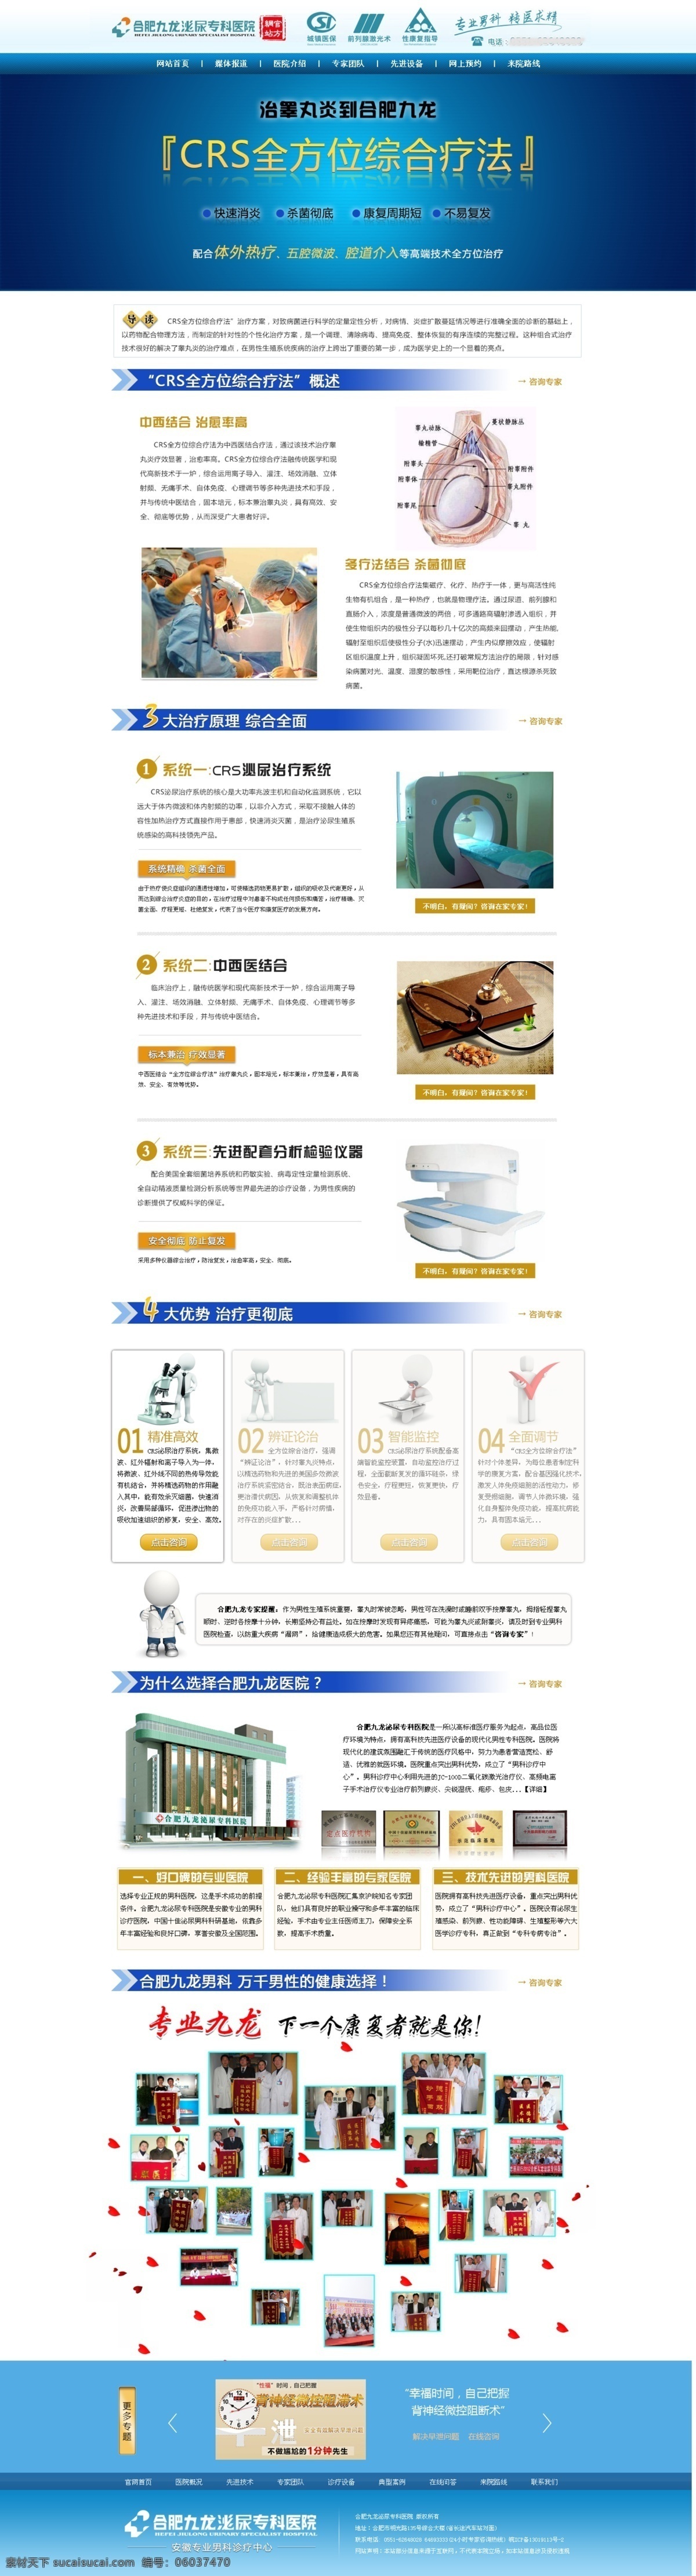 男科 医院 技术 专题 banner 广告 疾病 前列腺 网站 web 界面设计 中文模板 网页素材 其他网页素材